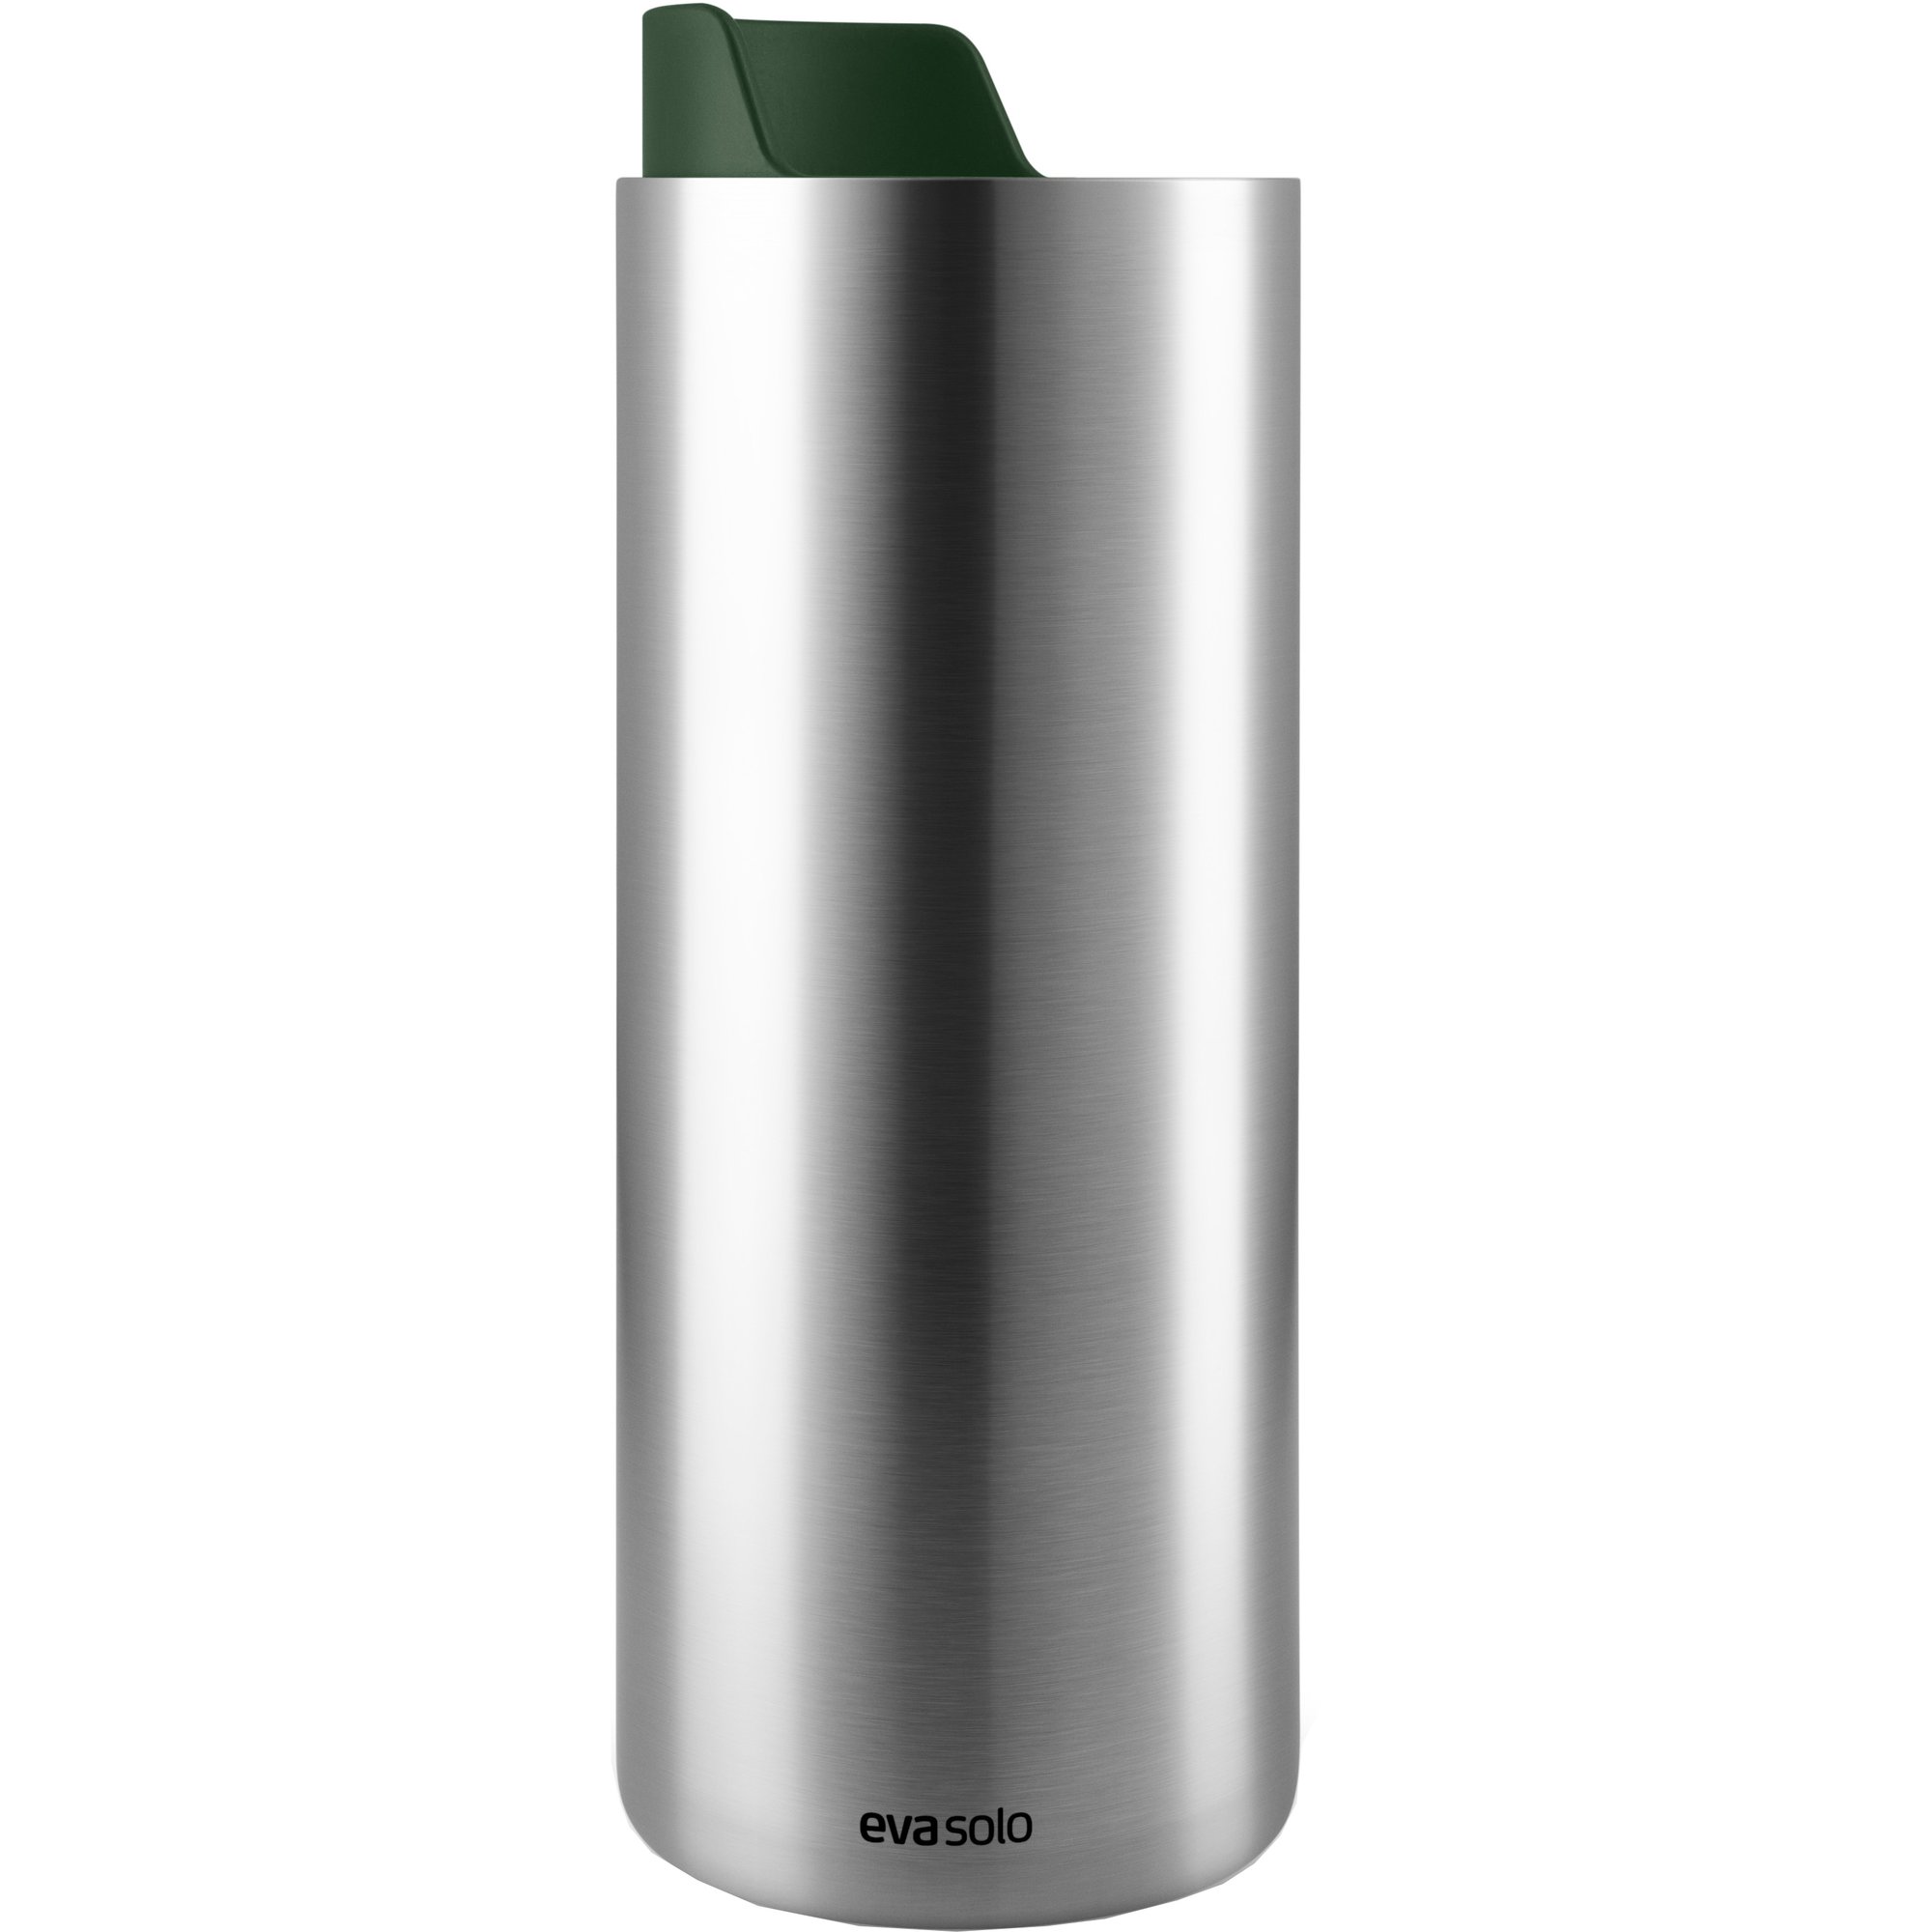 Eva Solo Urban To Go Cup Recycled termosmugg 0,35 liter, emerald green